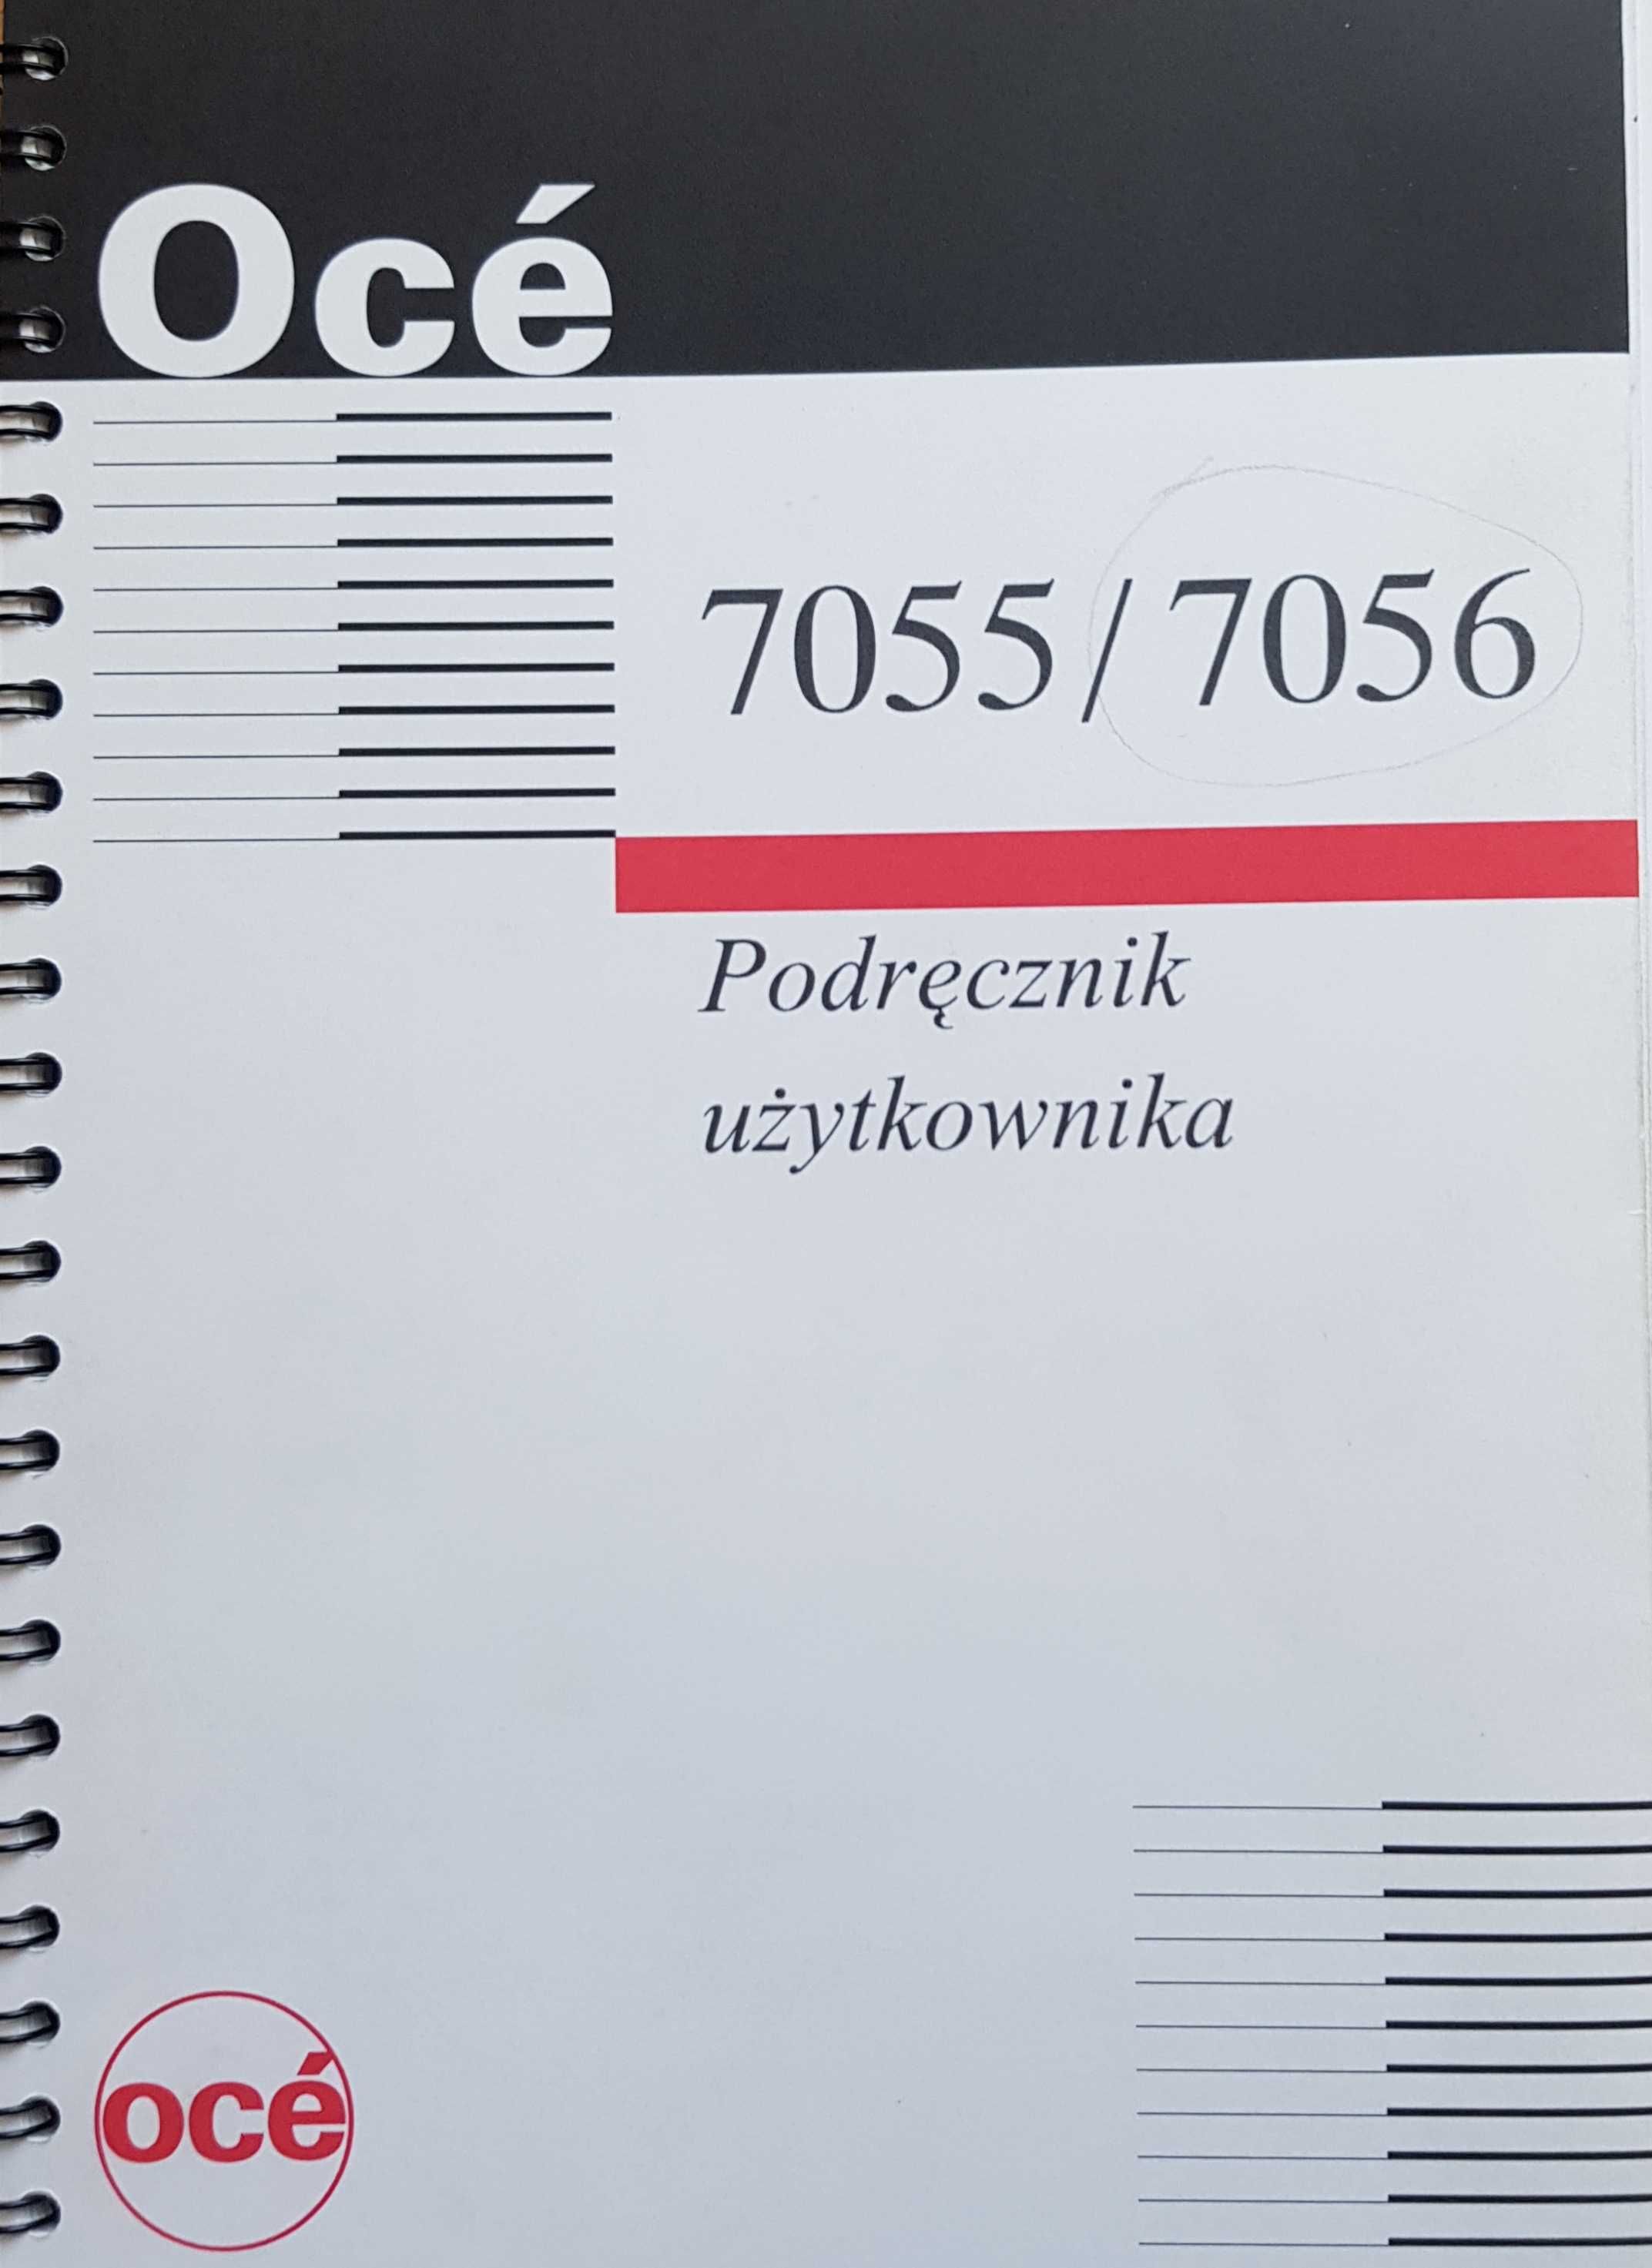 Wielkoformatowa kopiarka OCE 7056 + rolki papieru bezkońcowego A1 i A0